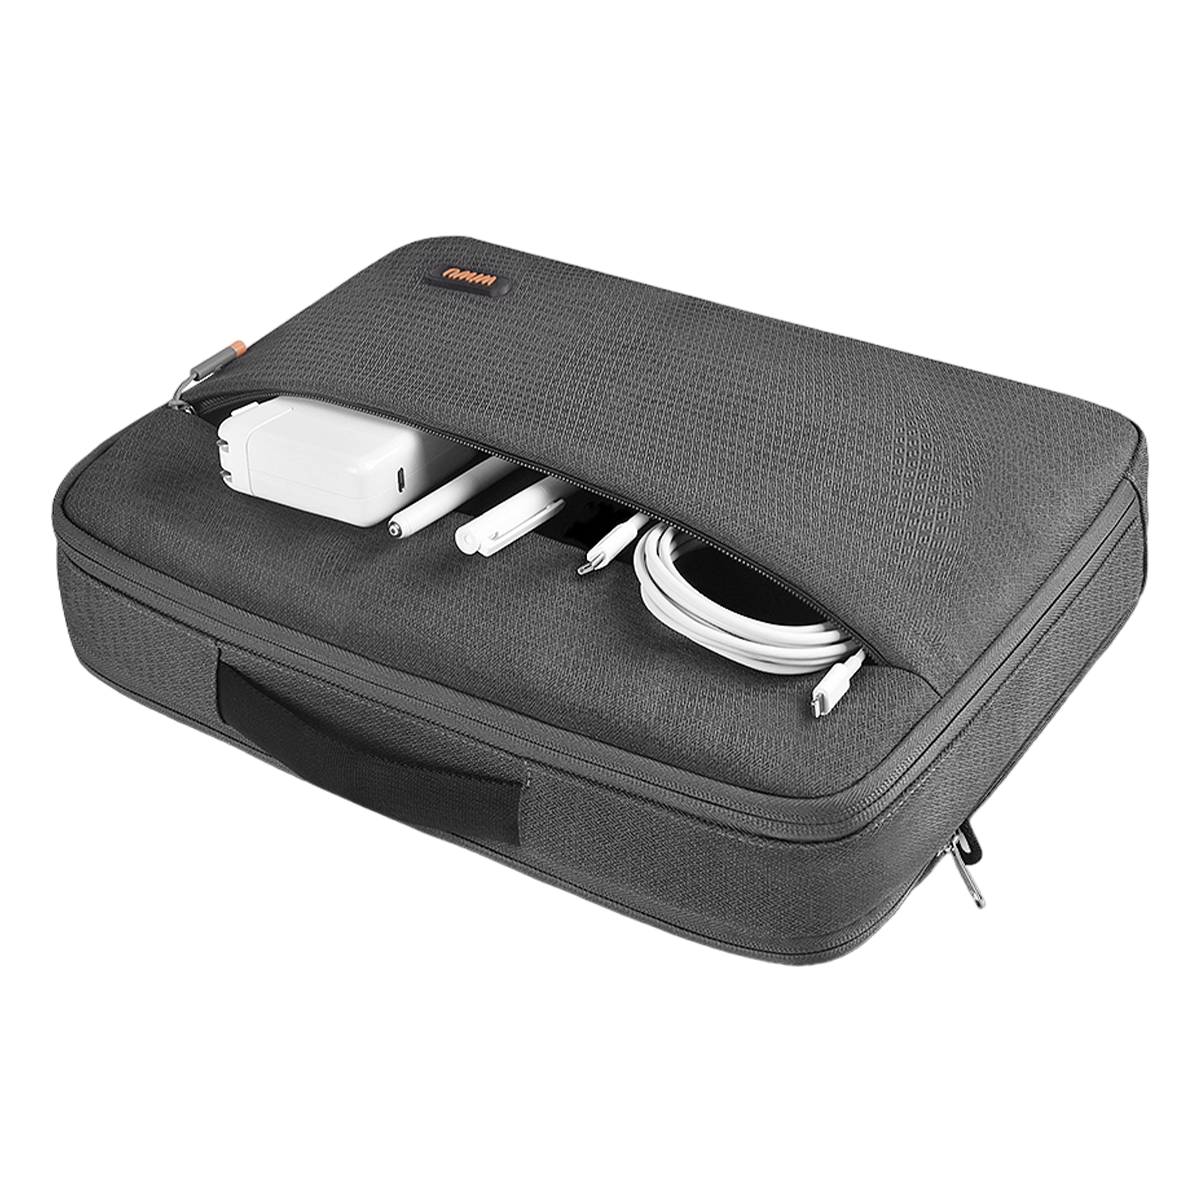 Wiwu Pilot Laptop Handbag